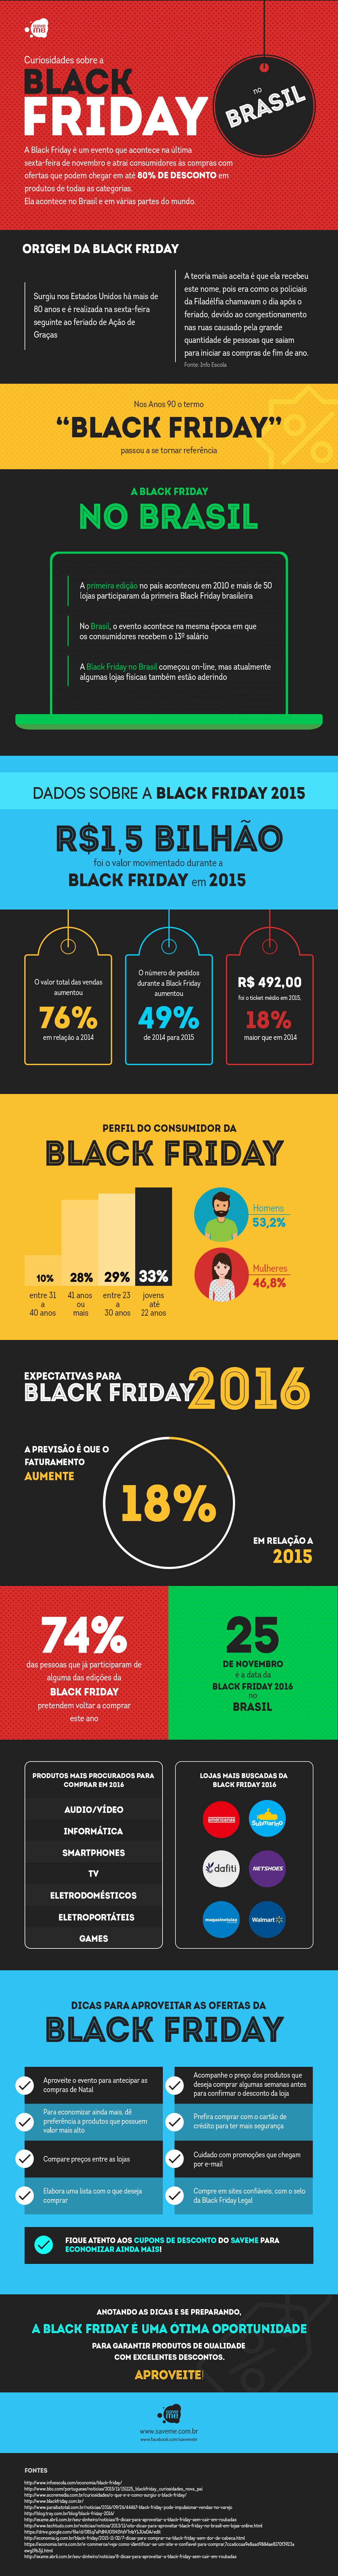 infografico mostra curiosidades da black friday